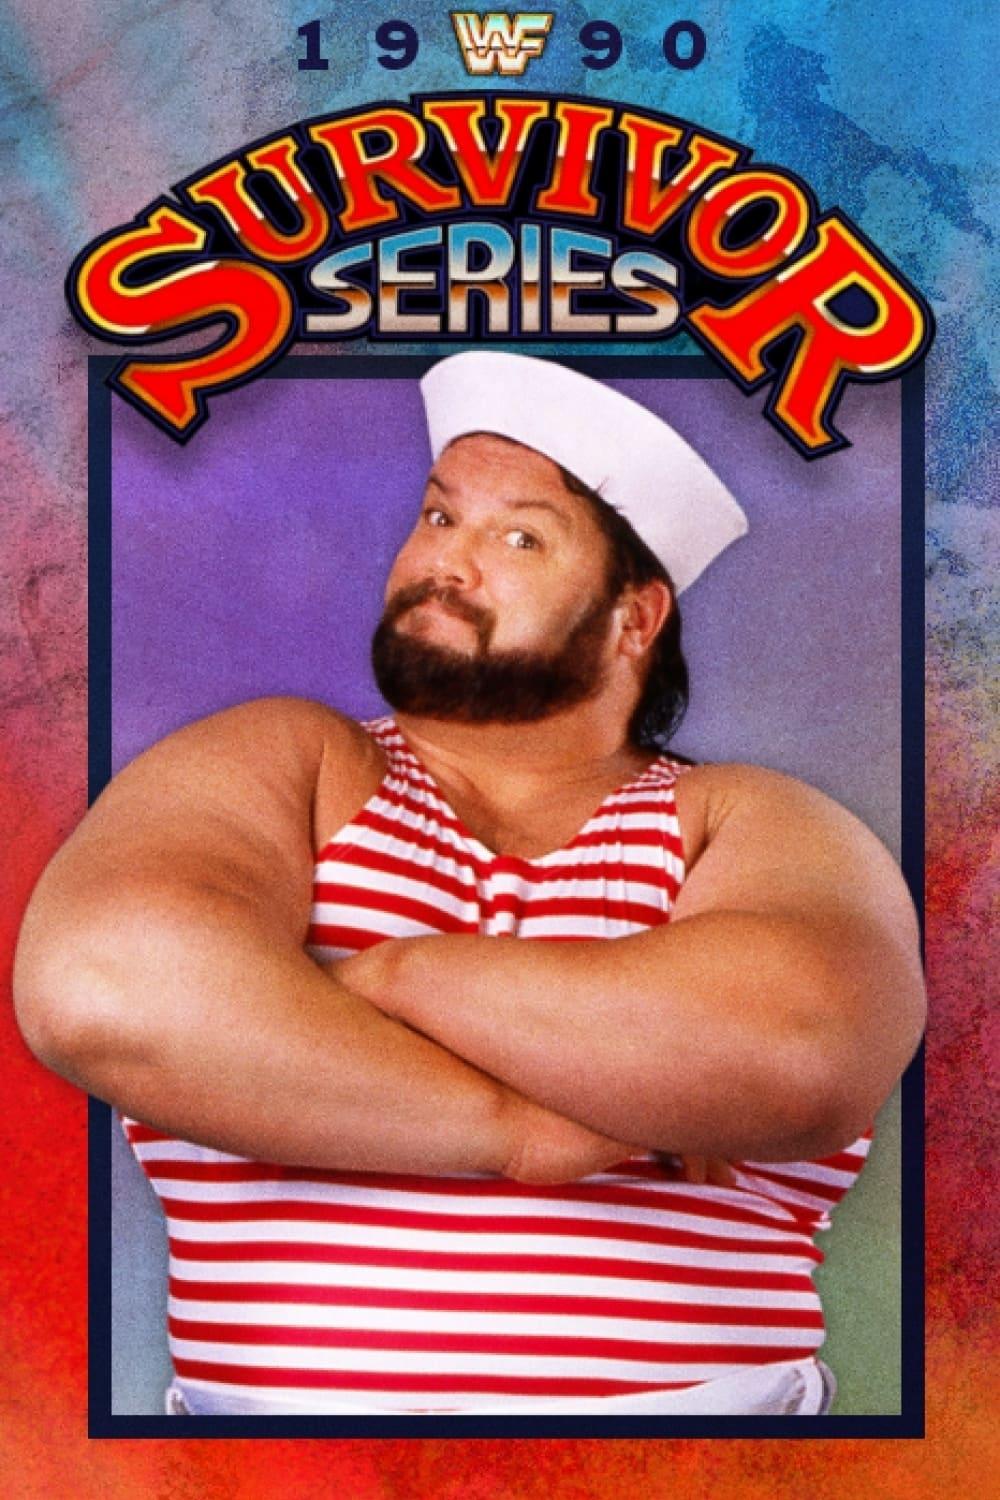 WWE Survivor Series 1990 poster